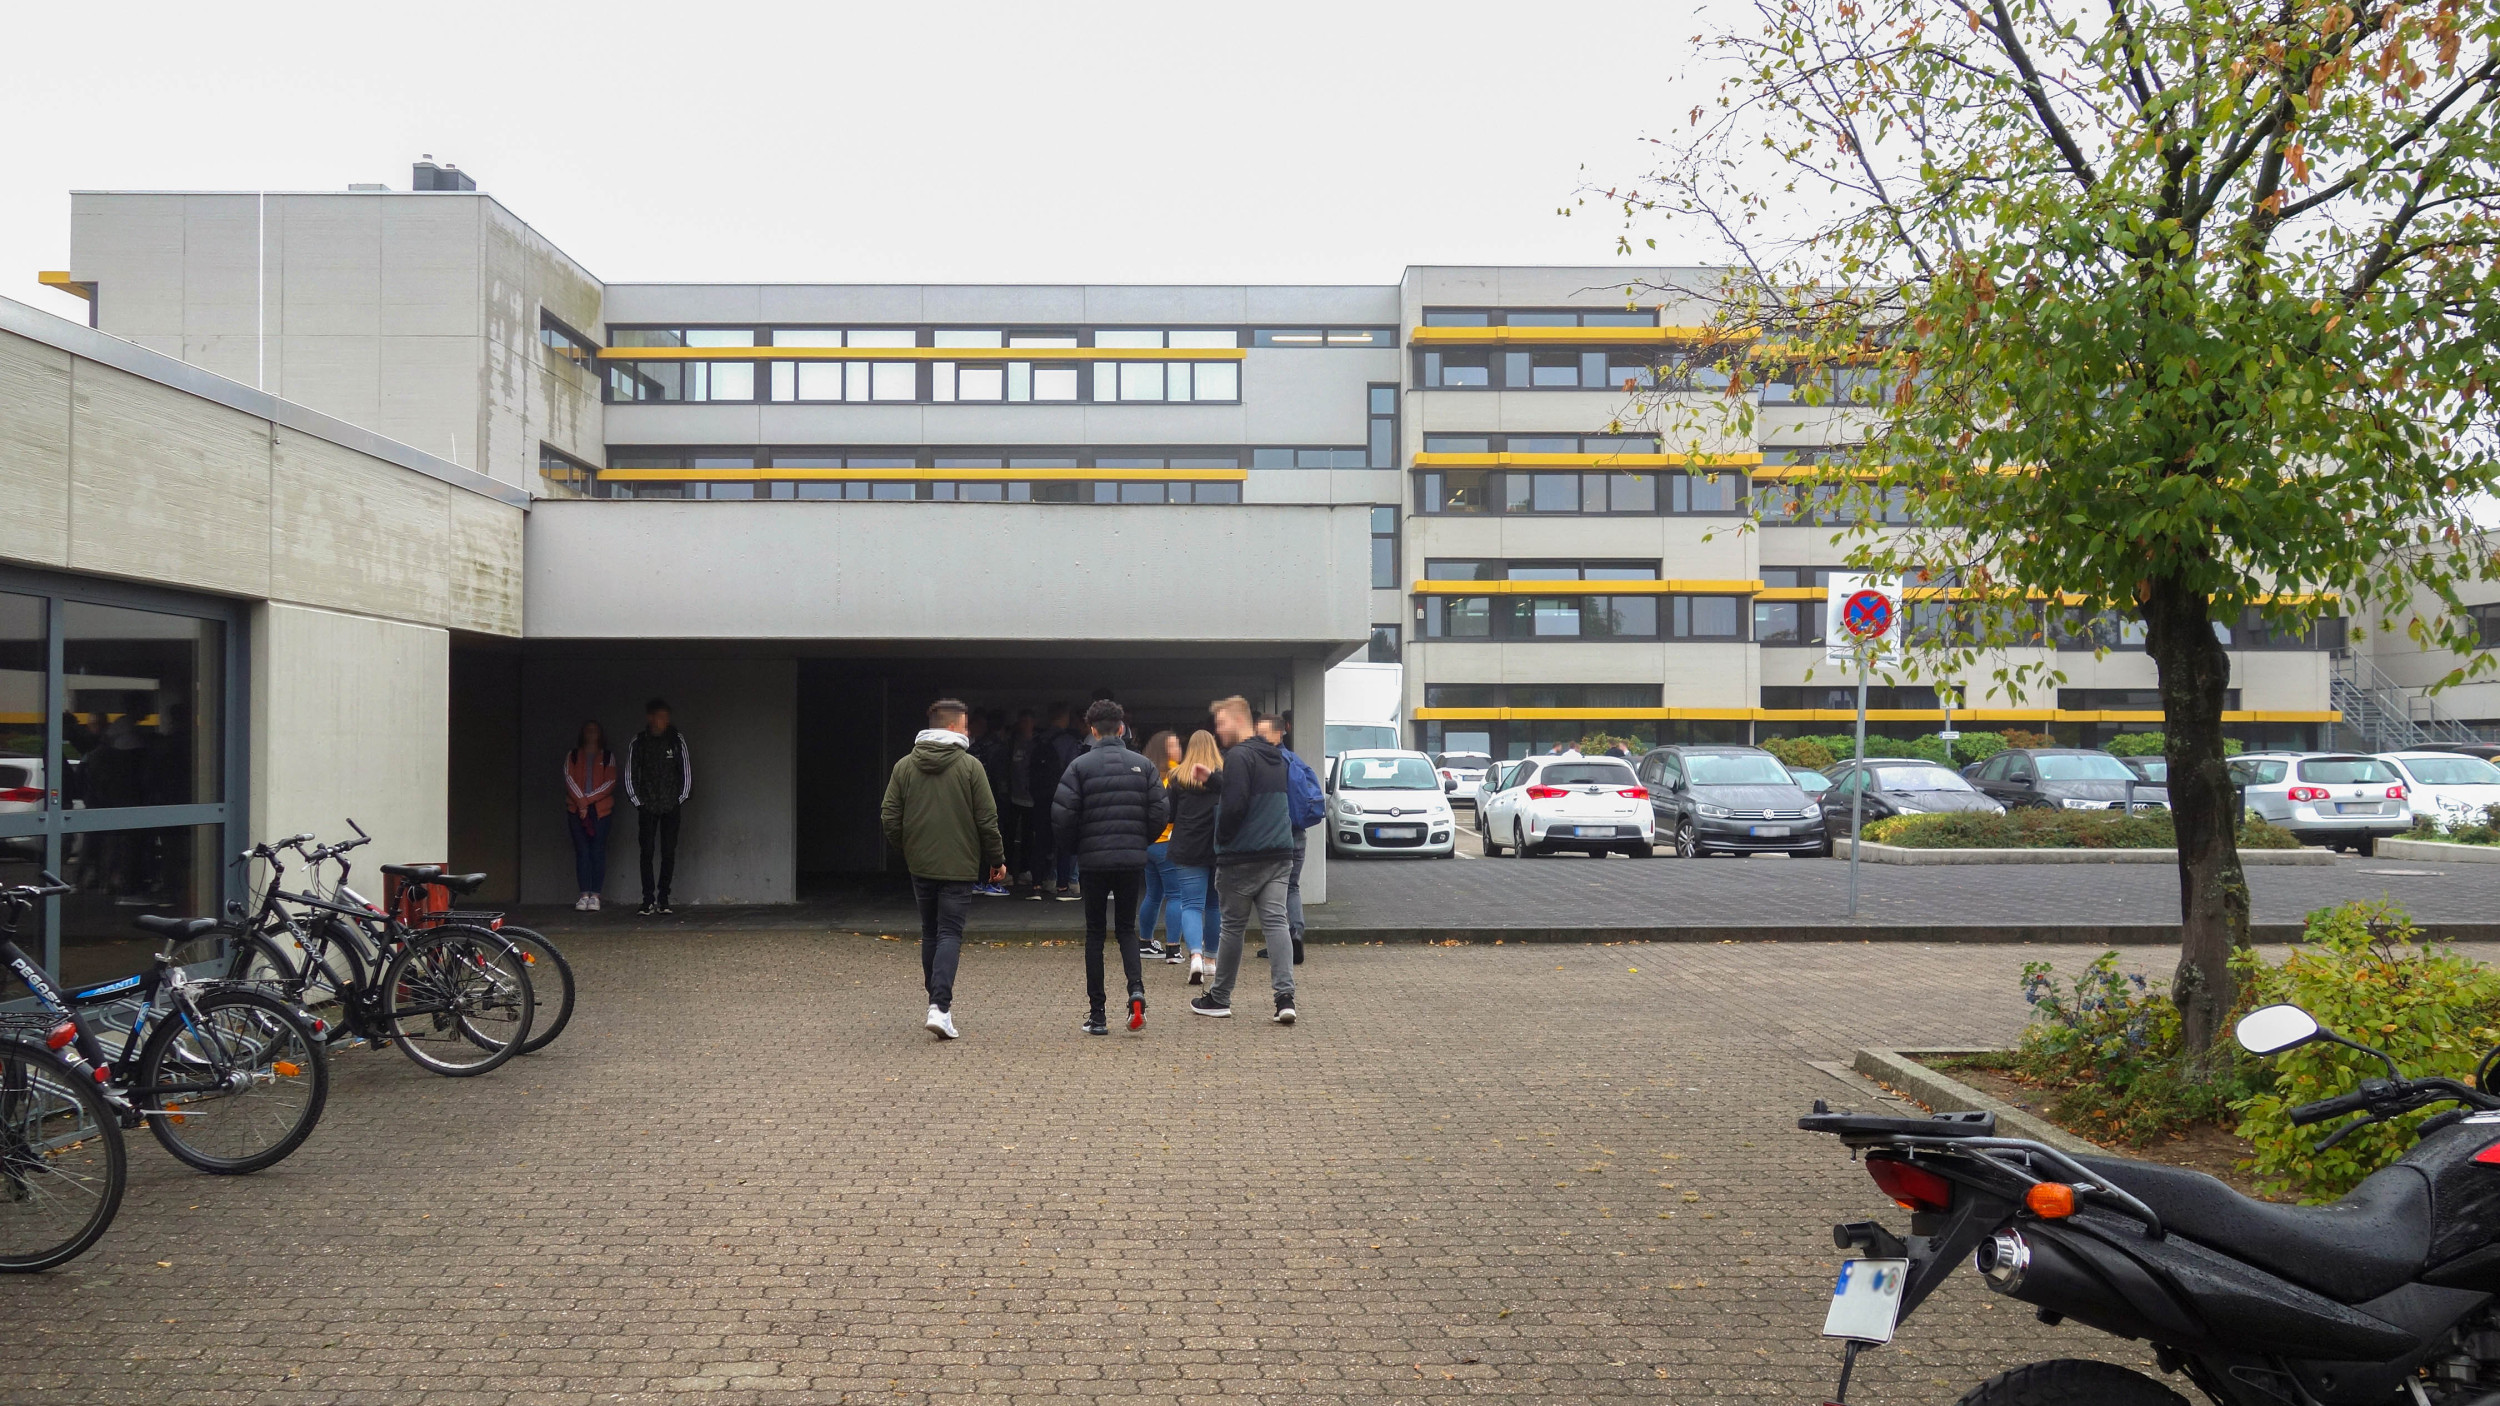 Außenperspektive zeigt eine Gruppe von Schüler:innen, die zum Haupteingang der Schule gehen.